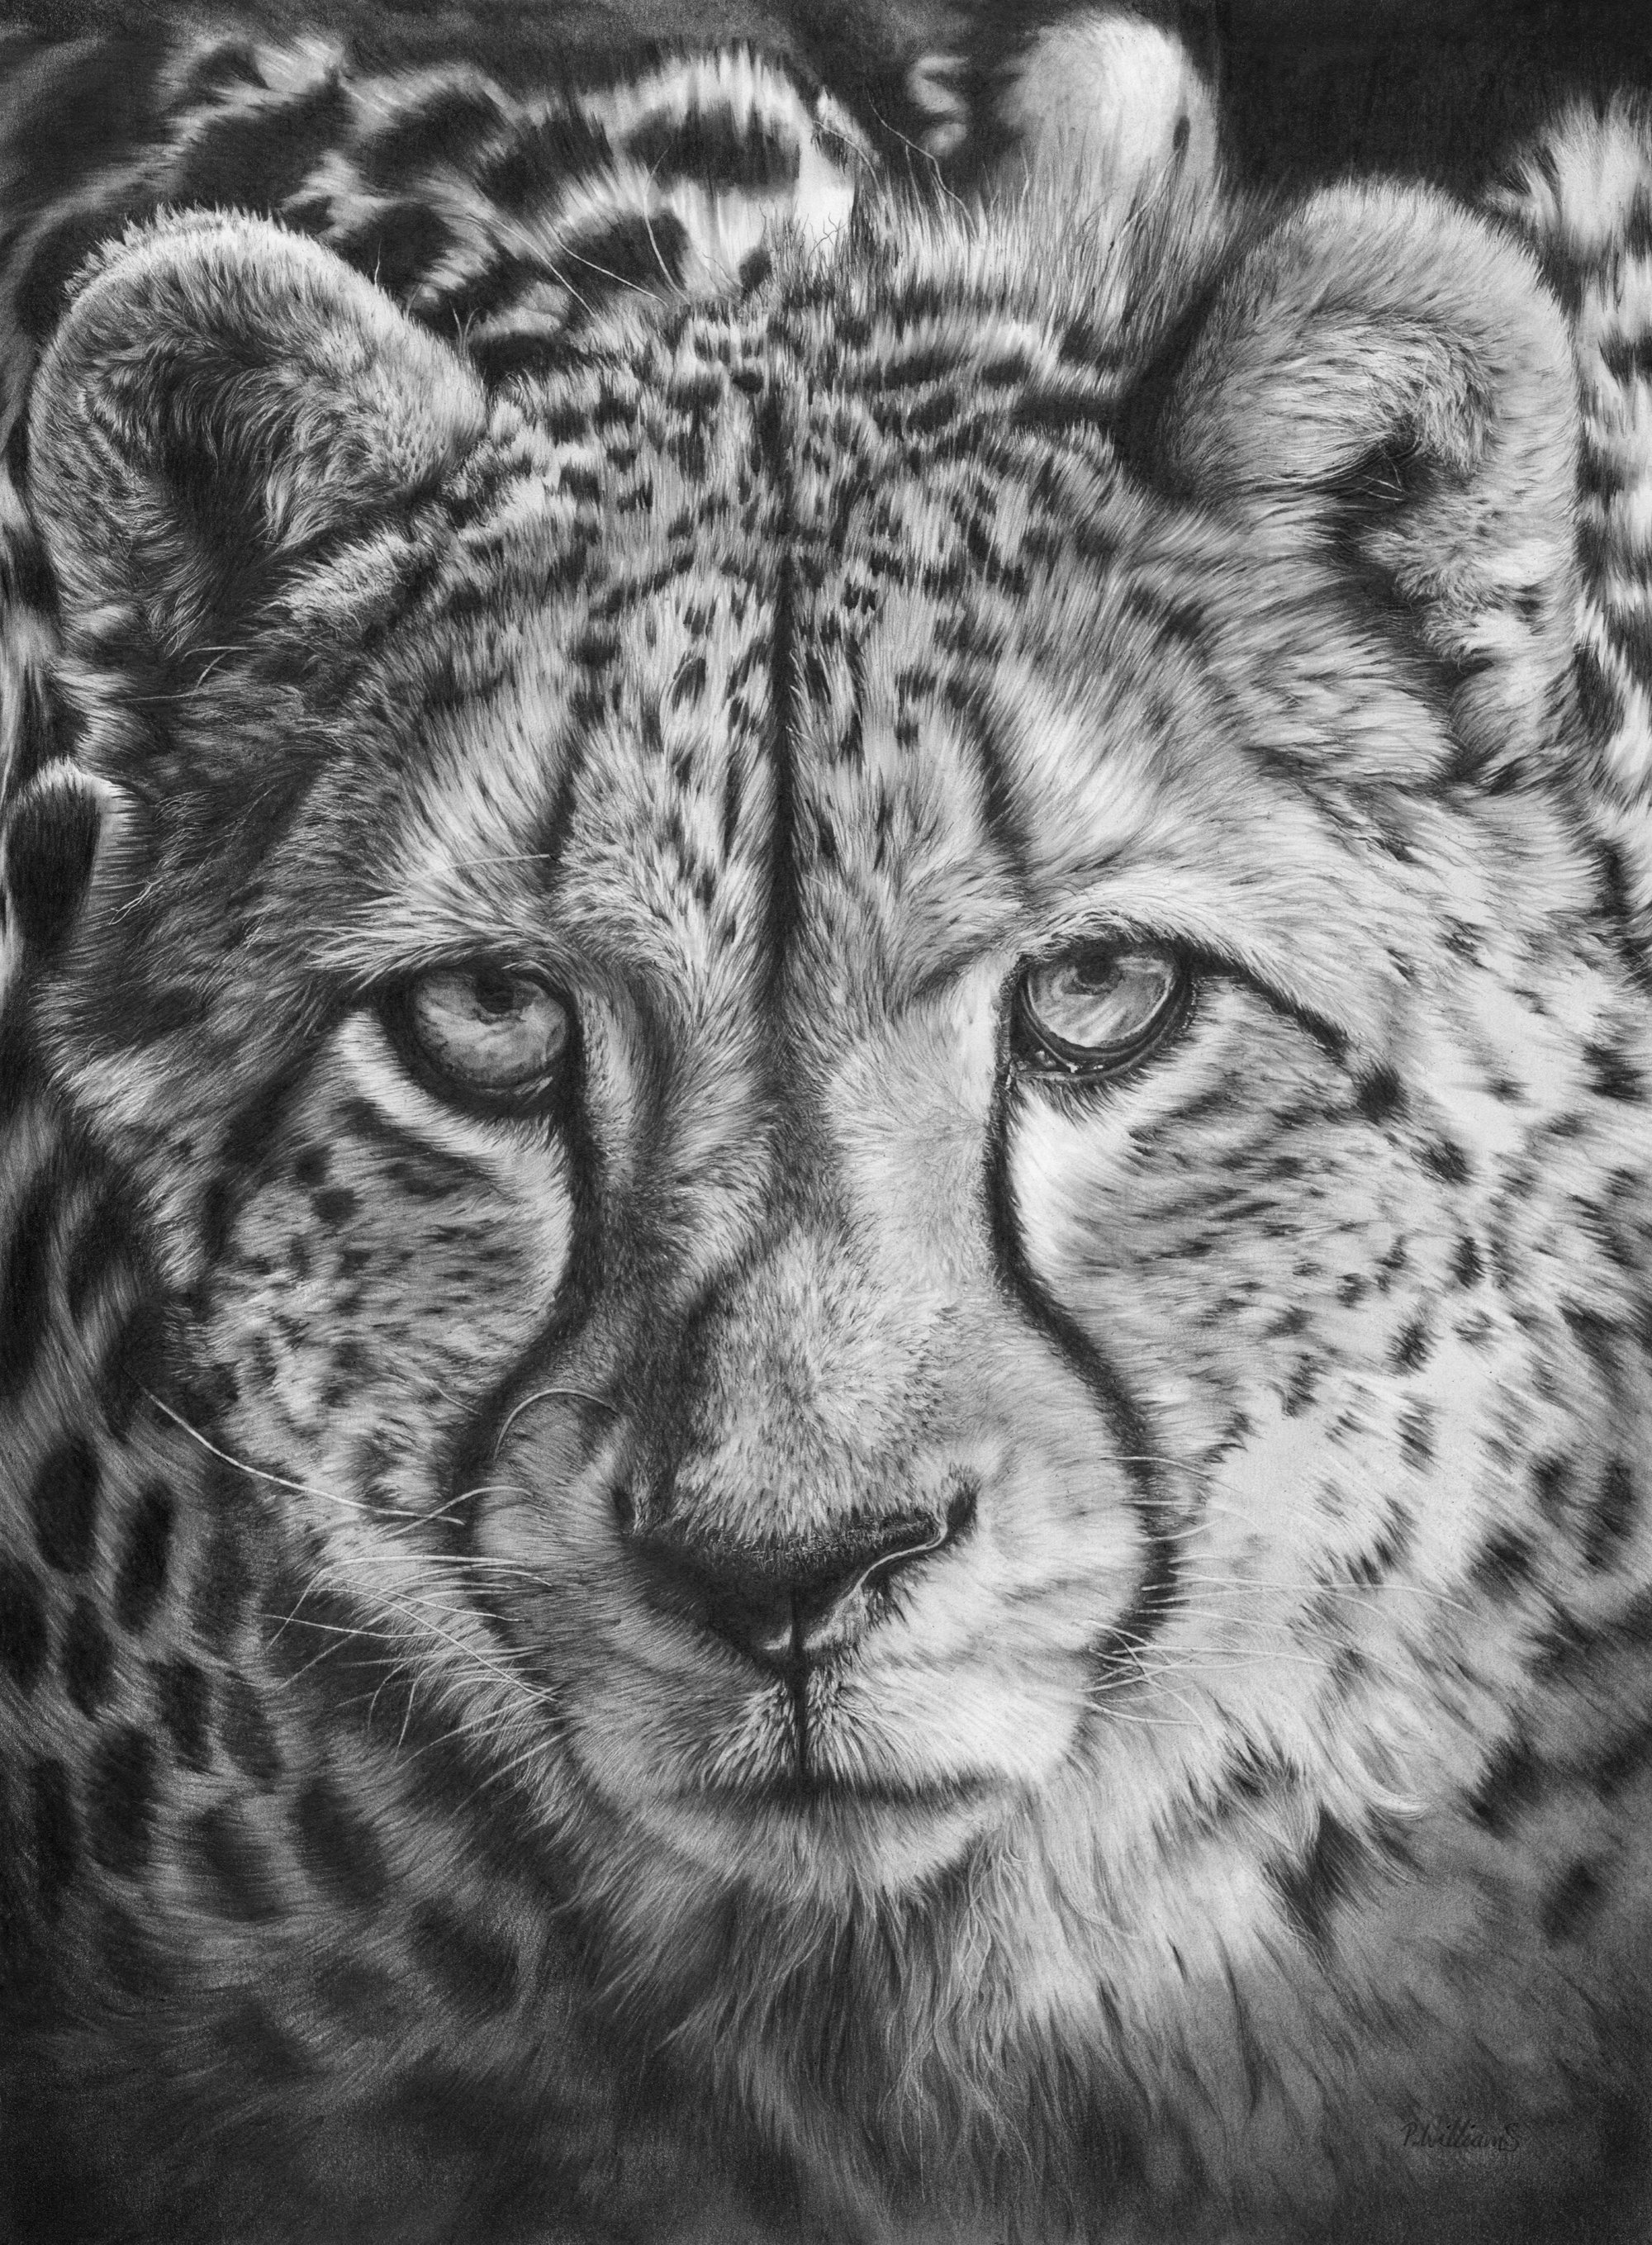 Cheetah Head by BentheBeard on DeviantArt